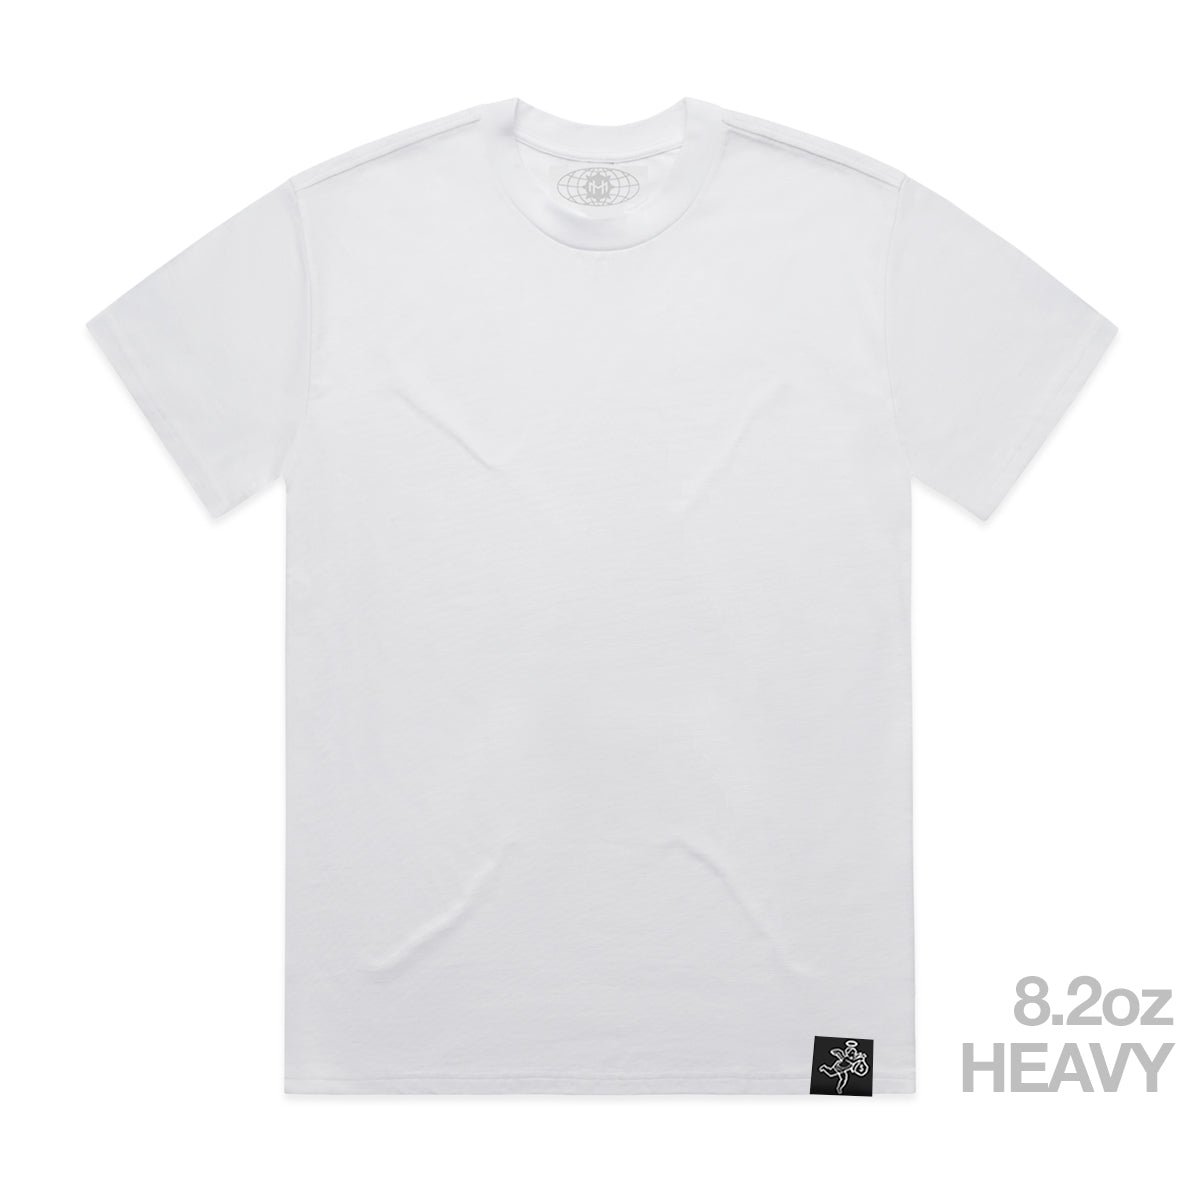 Camiseta blanca pesada - Básica